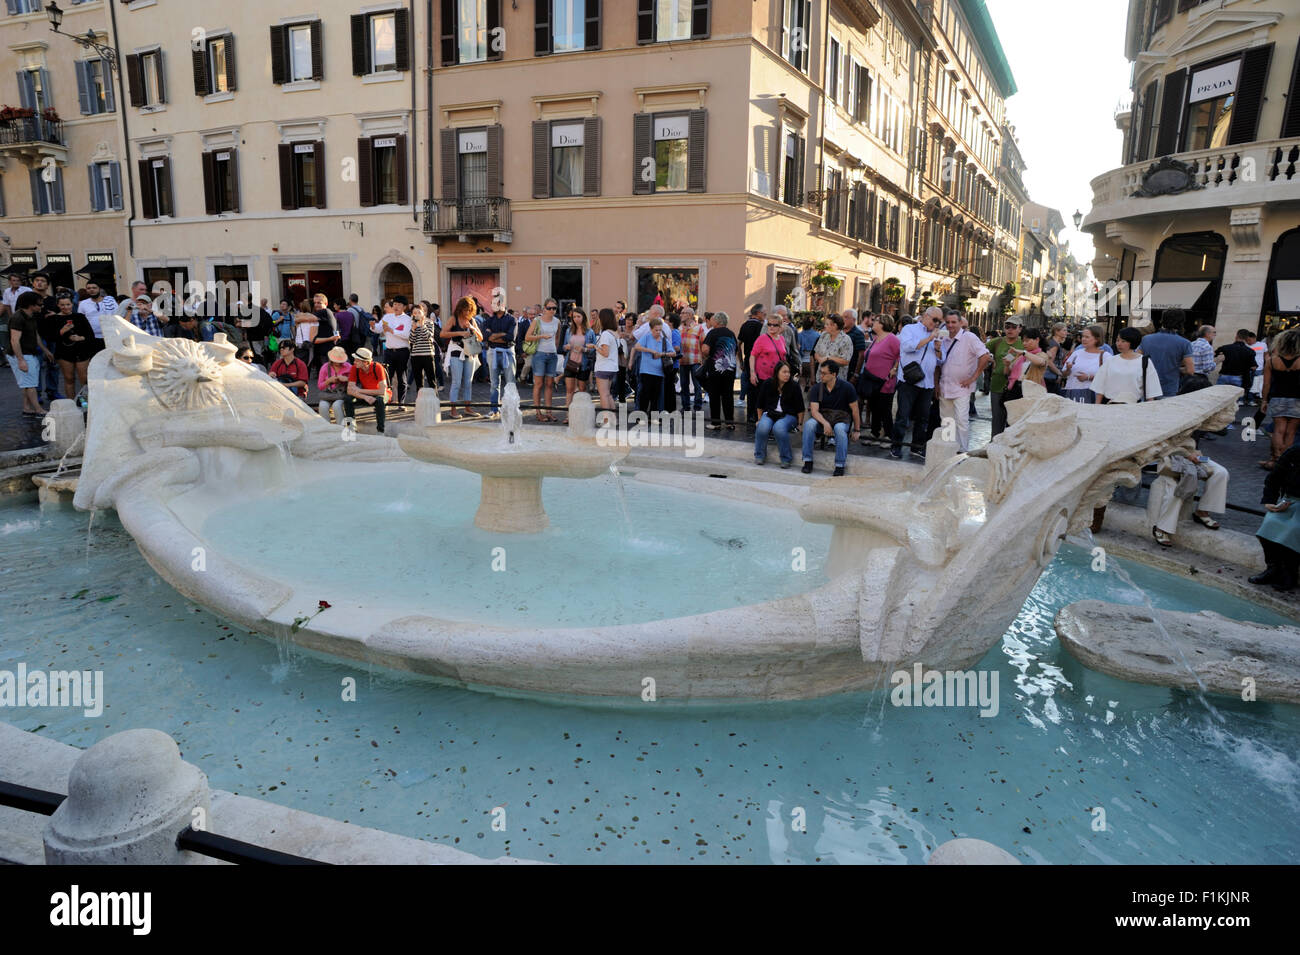 Barcaccia fountain, Piazza di Spagna, Rome, Italy Stock Photo